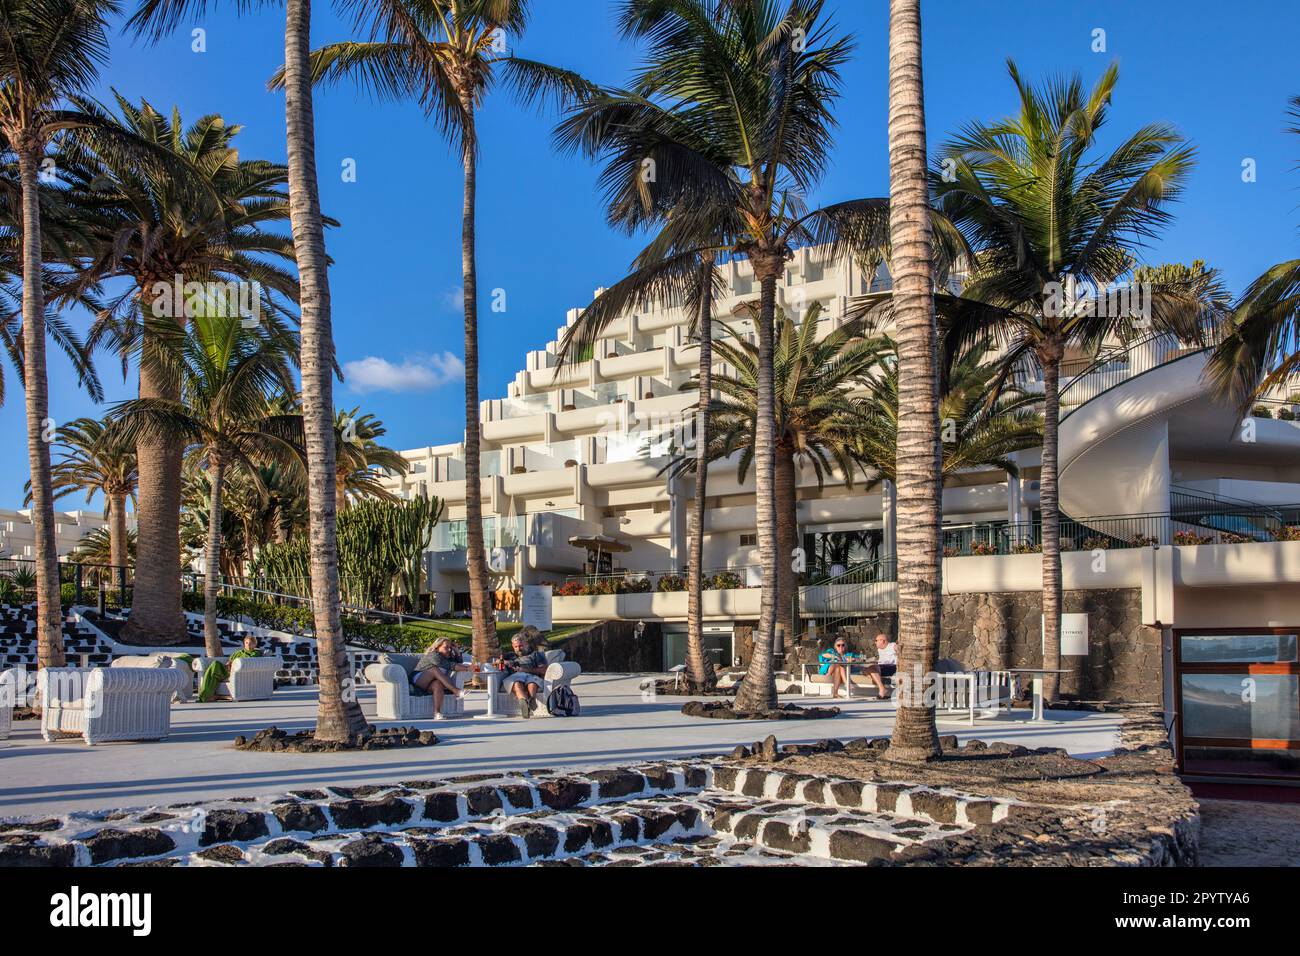 Spanien, Kanarische Inseln, Lanzarote. Costa Teguise. Das Hotel Gran Melia Salinas wurde nach dem Vorbild von Cesar Manrique gestaltet. Stockfoto